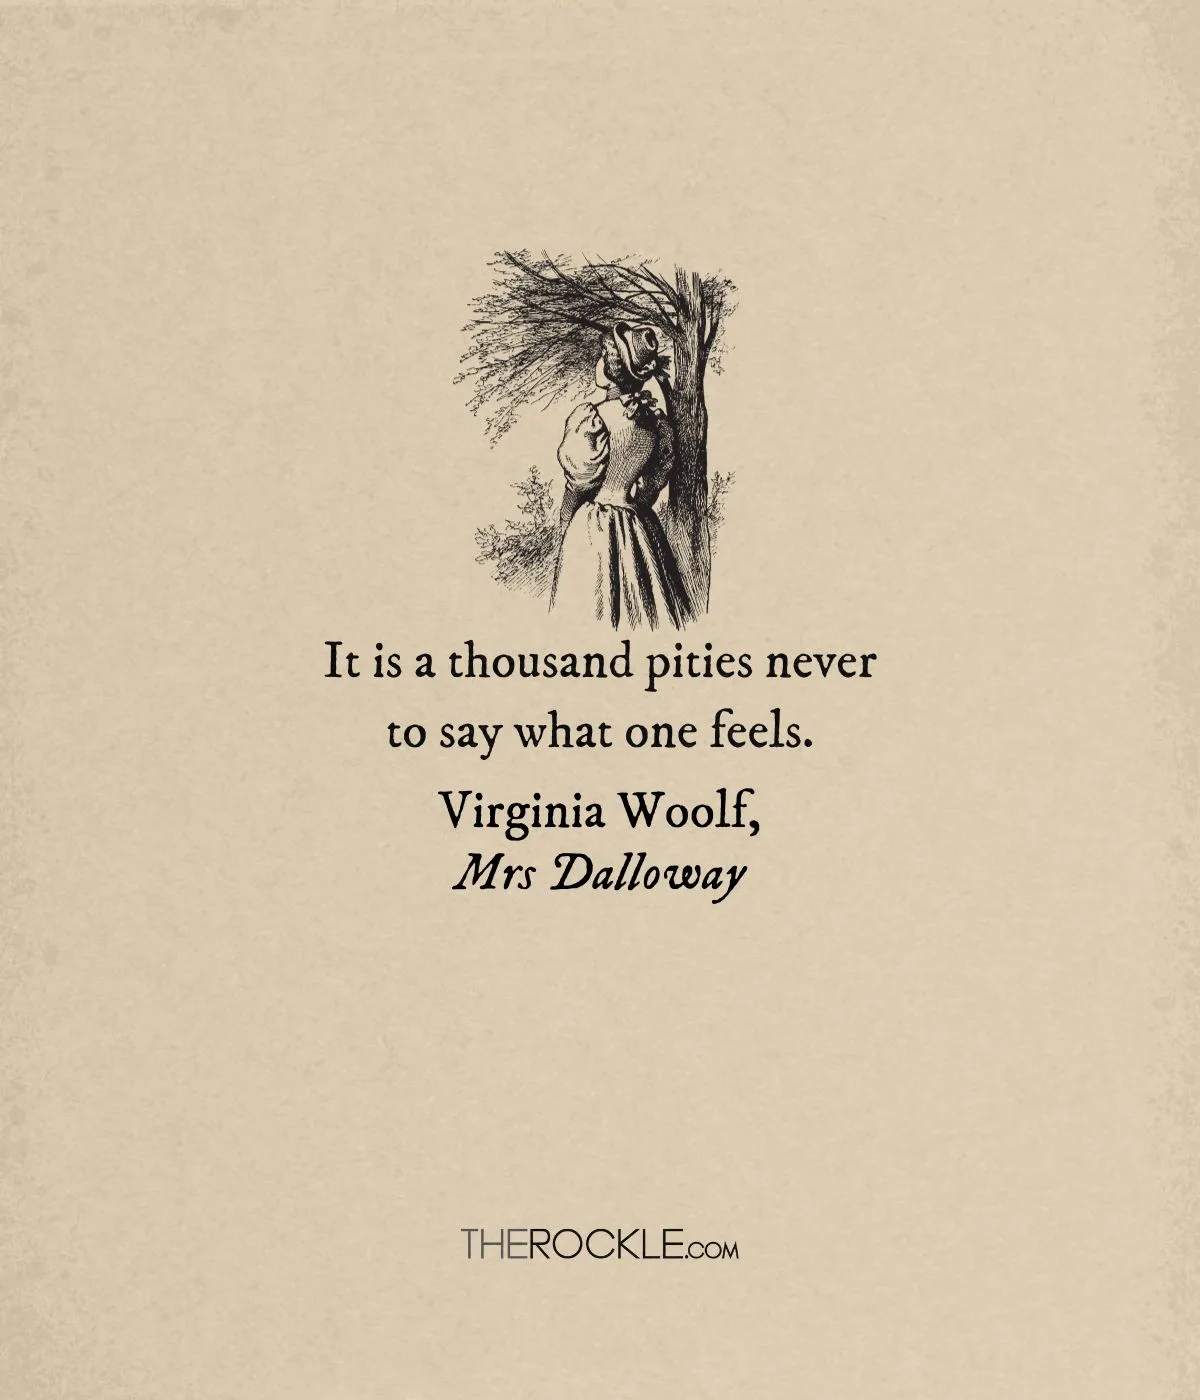 Virginia Woolf on expressing true feelings